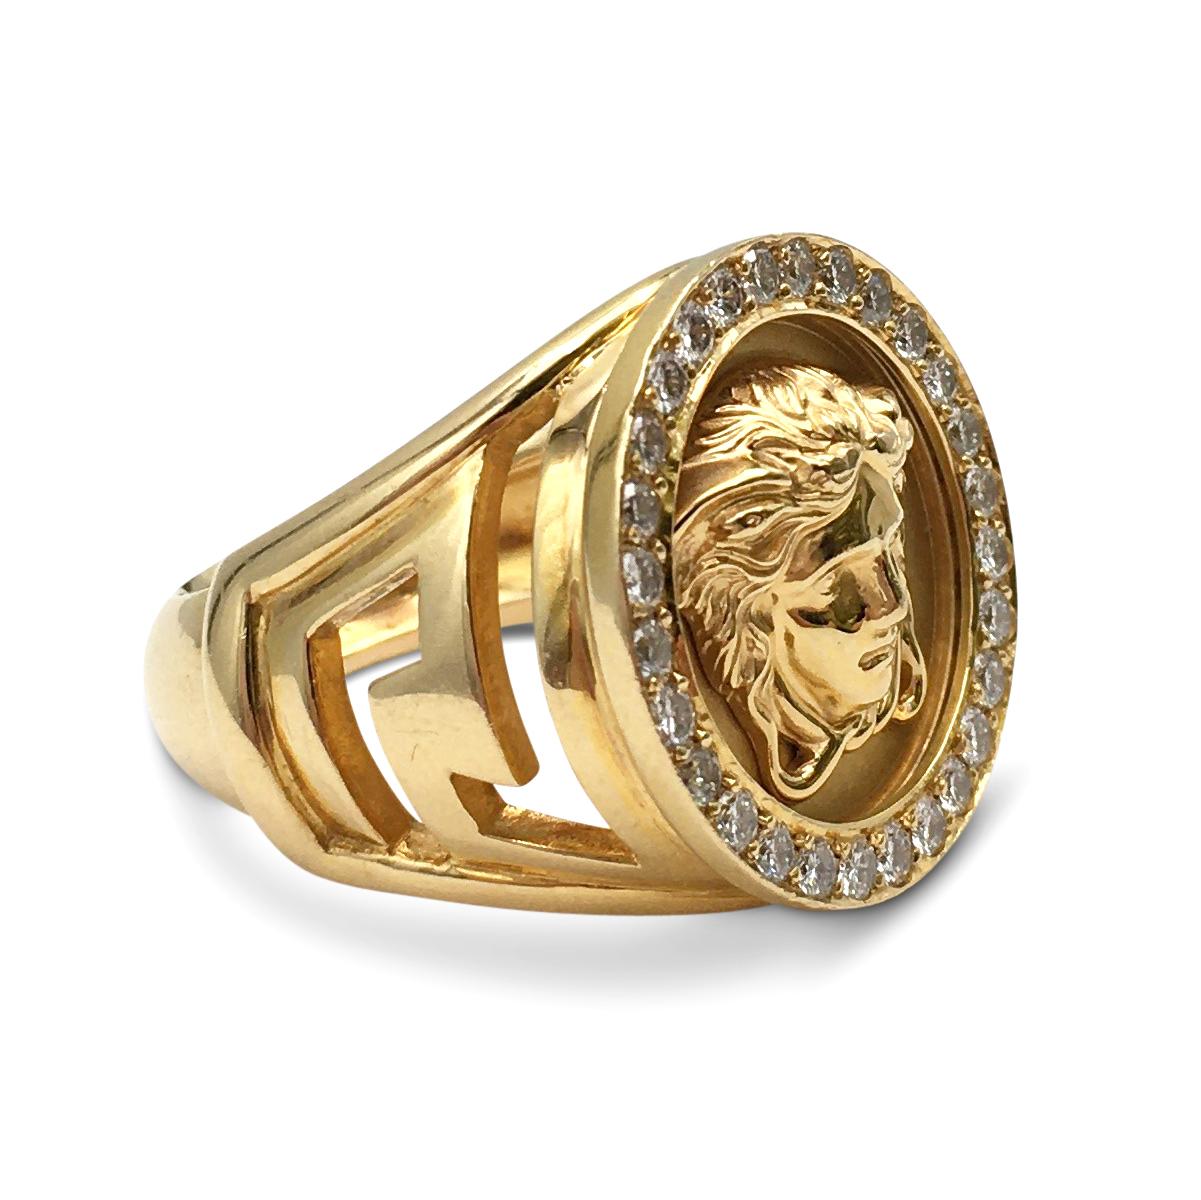 Taille ronde Gianni Versace - Bague en or et diamants tête de Méduse